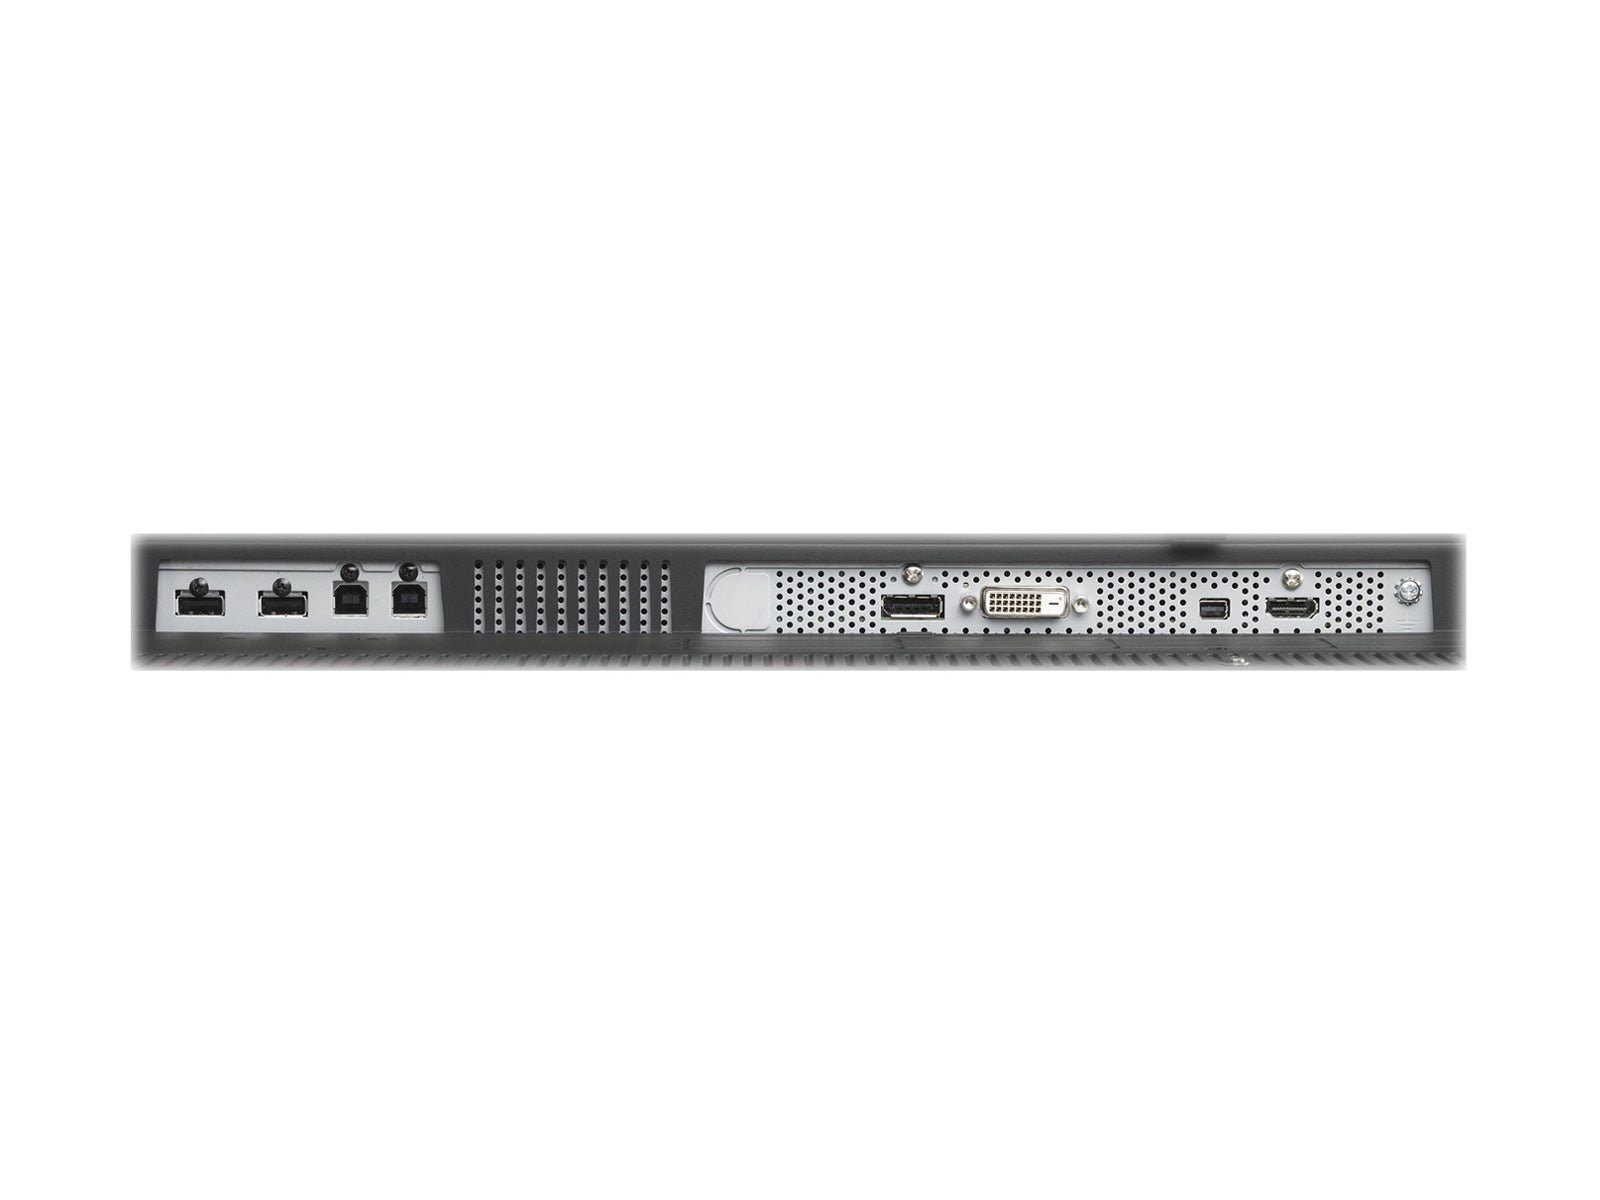 NEC MultiSync MD302C4 4MP 30 インチ カラー LED 一般放射線 PACS ディスプレイ (MD302C4) Monitors.com